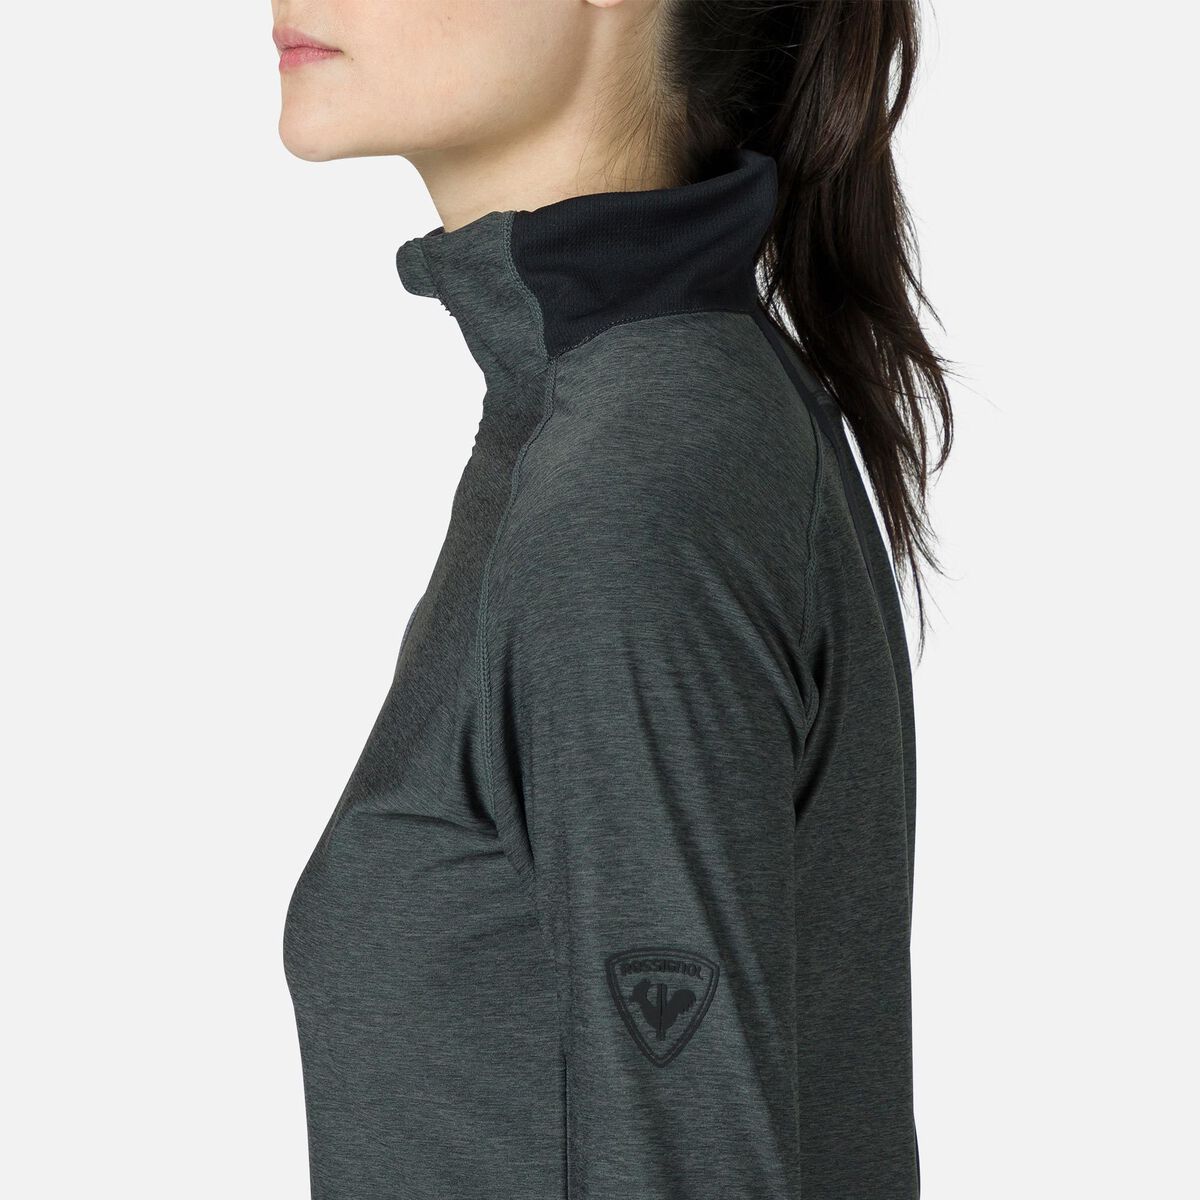 Rossignol Women's Melange Half-Zip Hiking Pullover grey